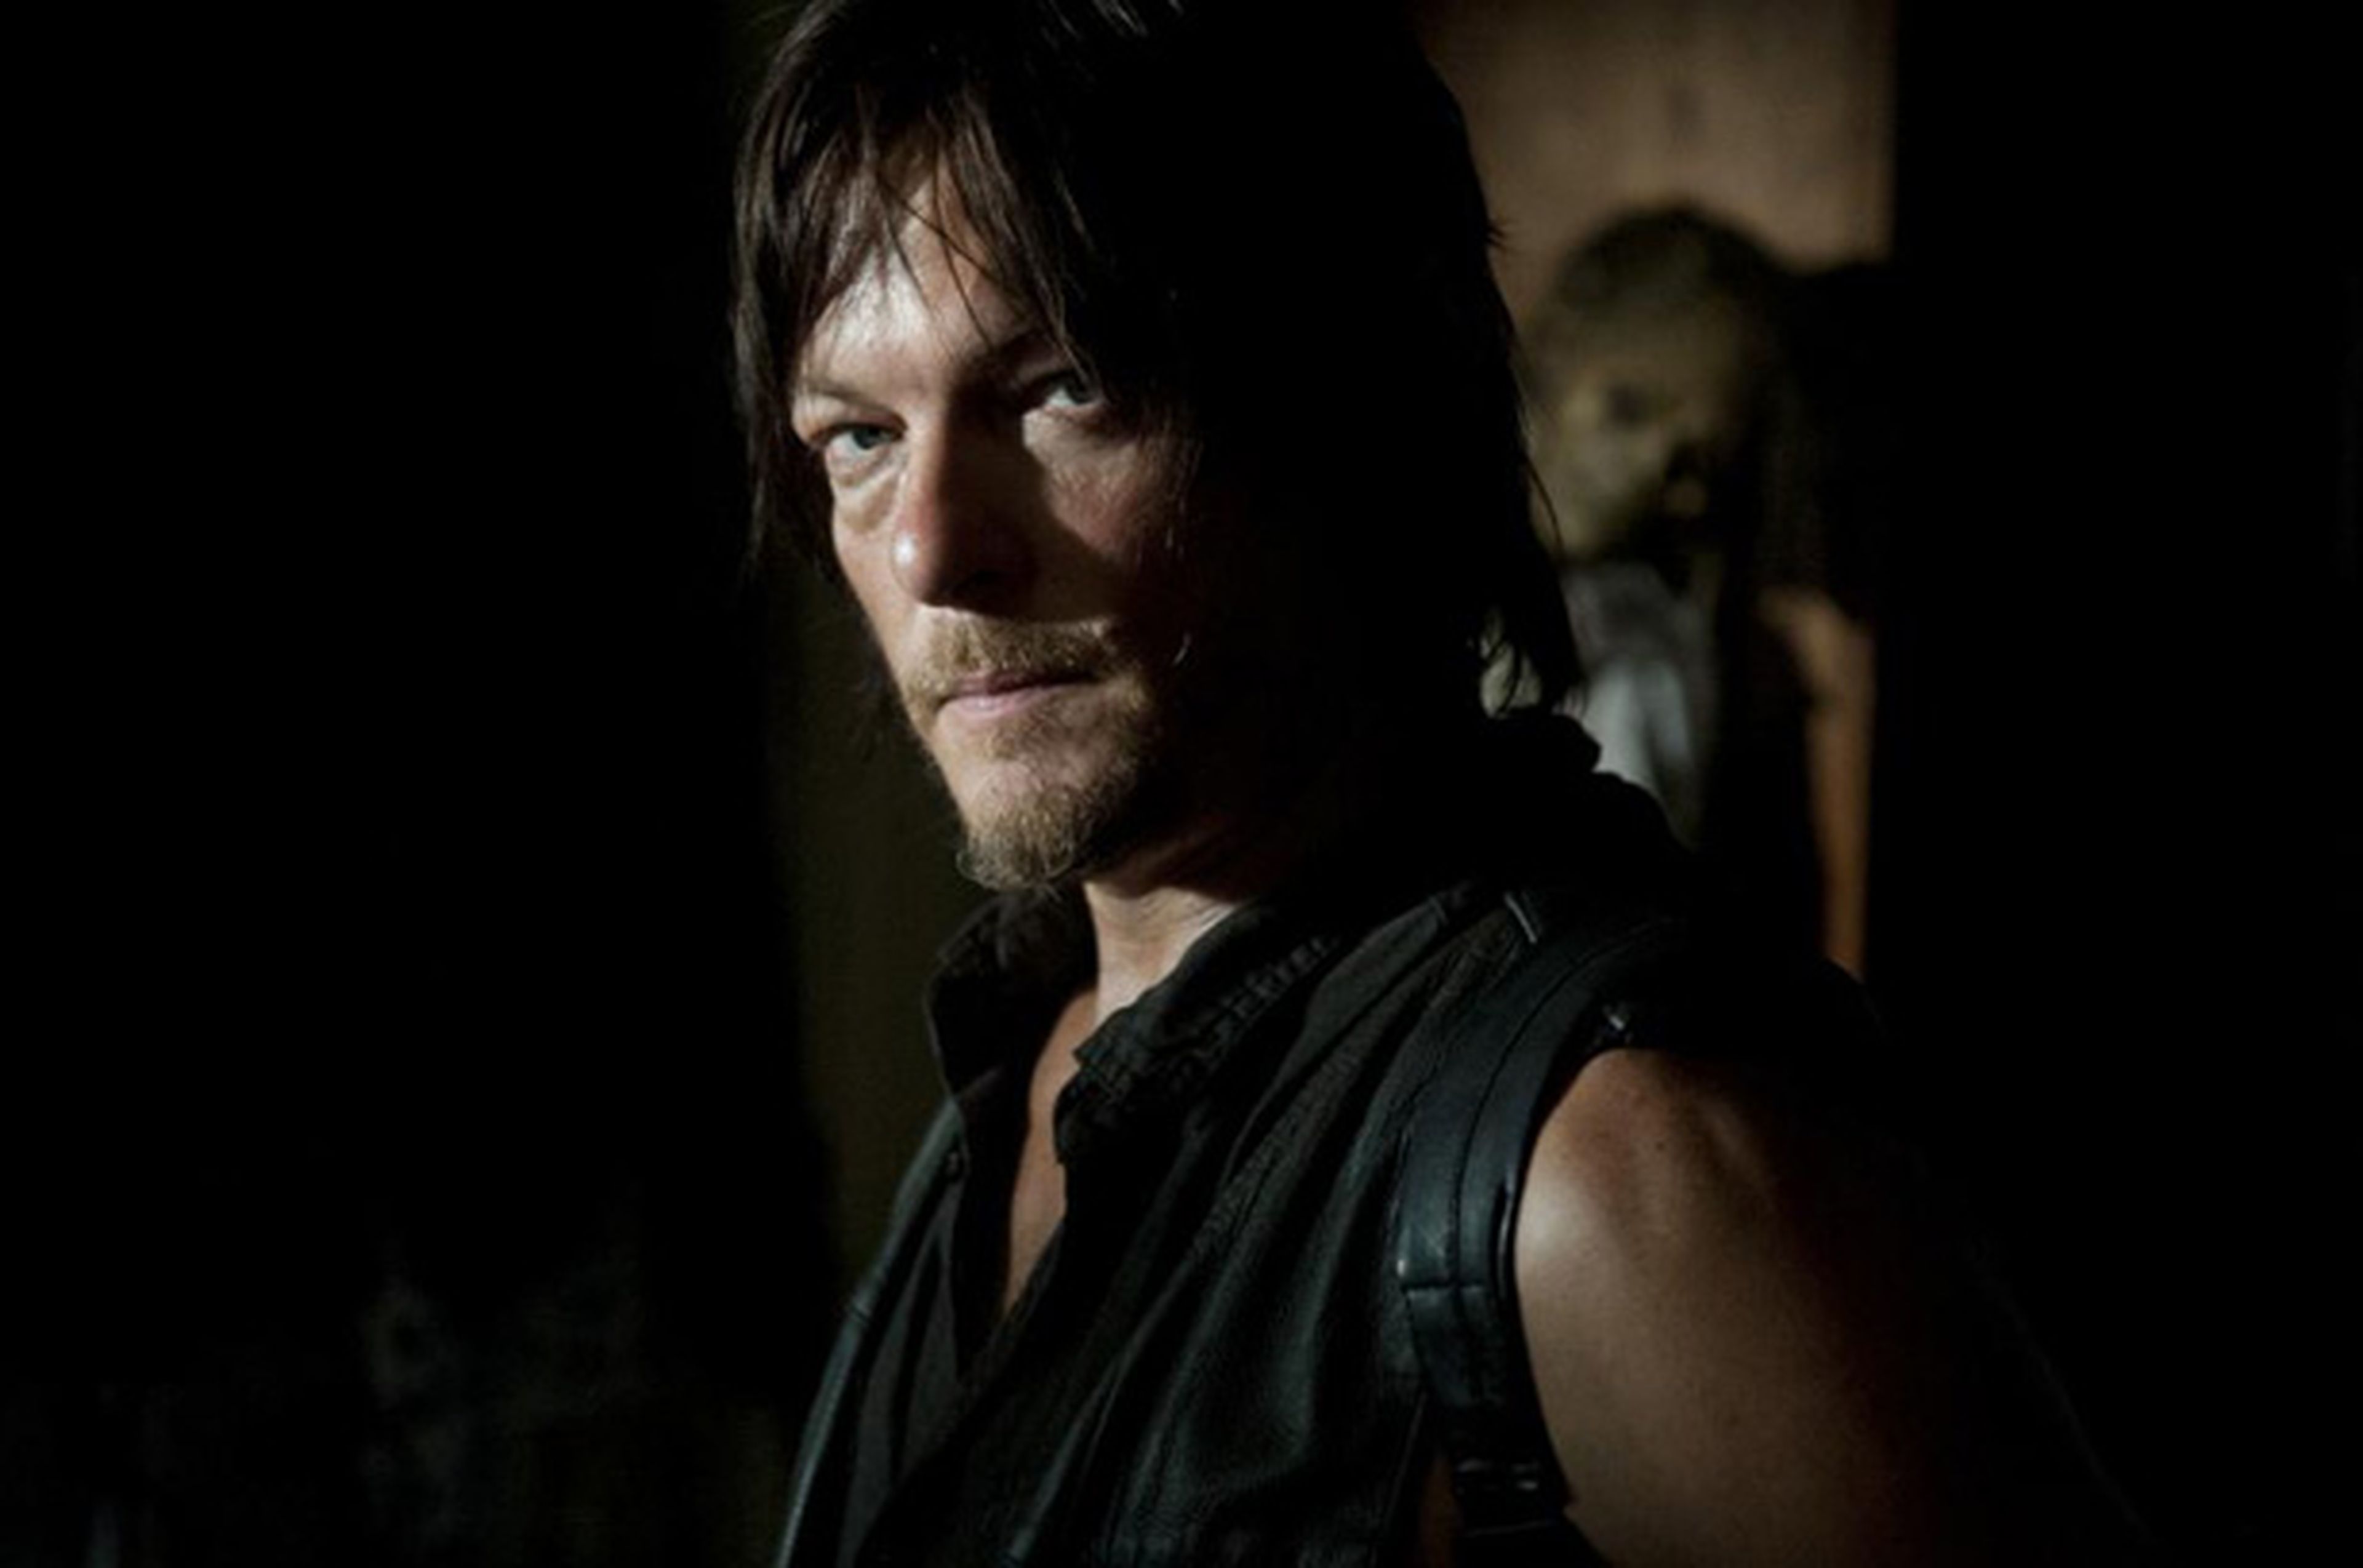 El personaje Daryl Dixon de The Walking Dead podría ser gay